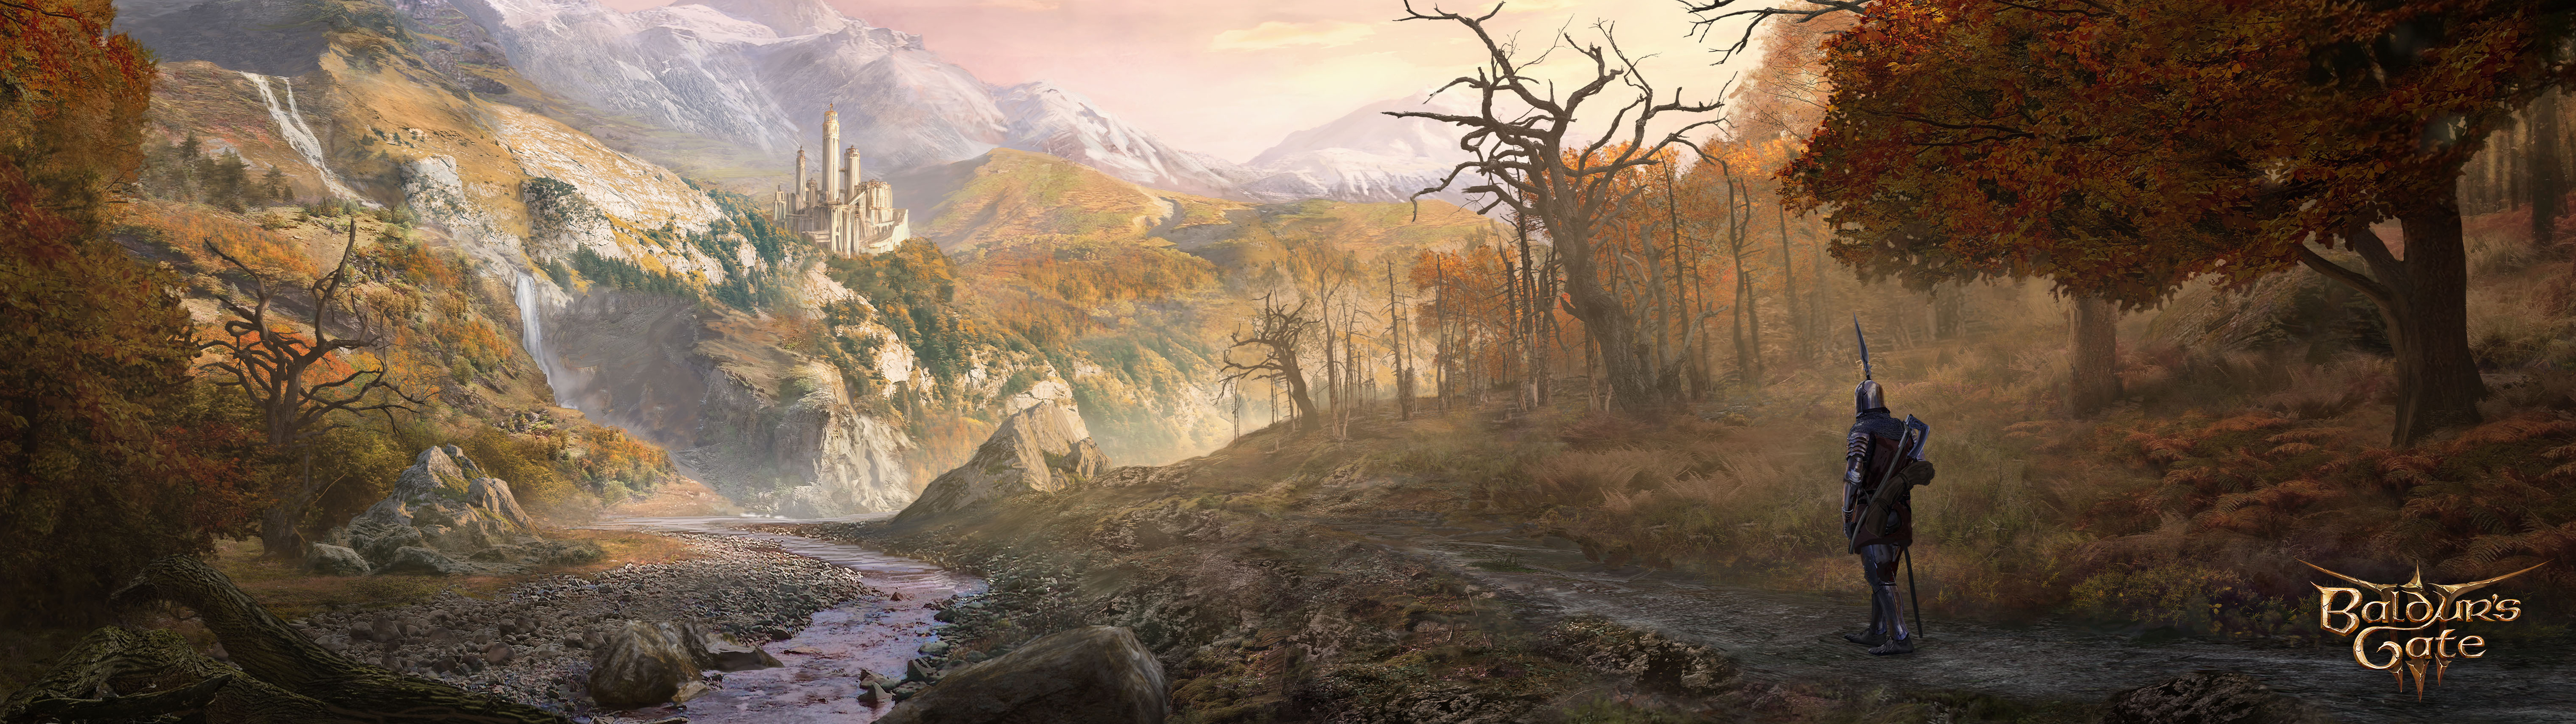 Baldurs Gate 3 Dungeons Dragons Larian Studios Panorama Panoramic Sphere Baldurs Gate Wide Screen 7680x2160